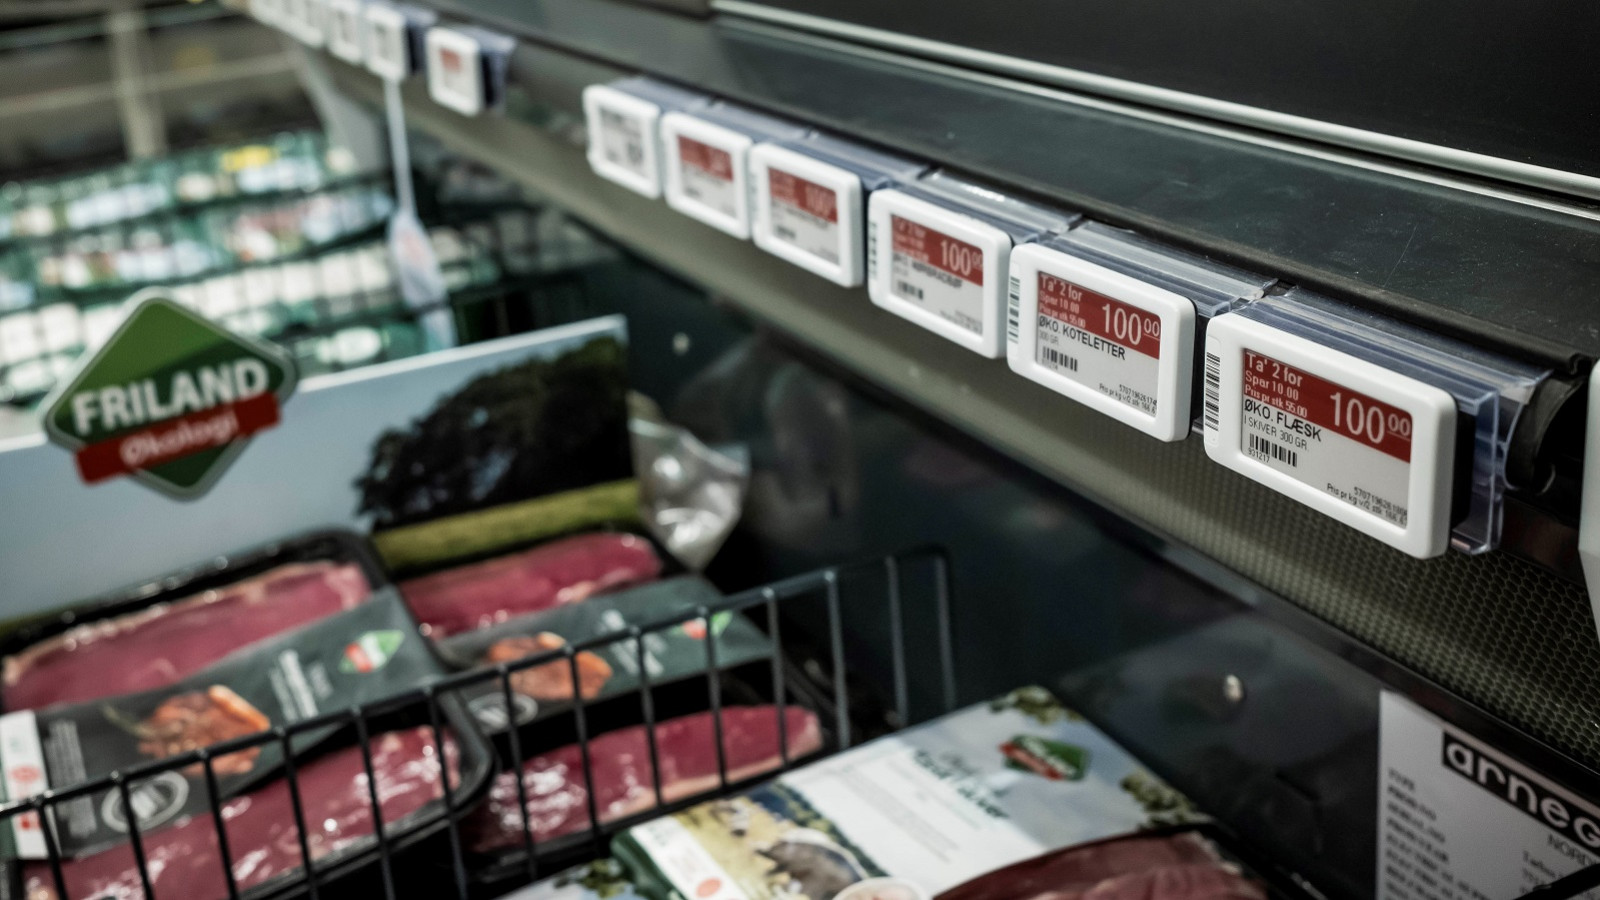 Kød fra Friland på tilbud i køledisk i Meny.